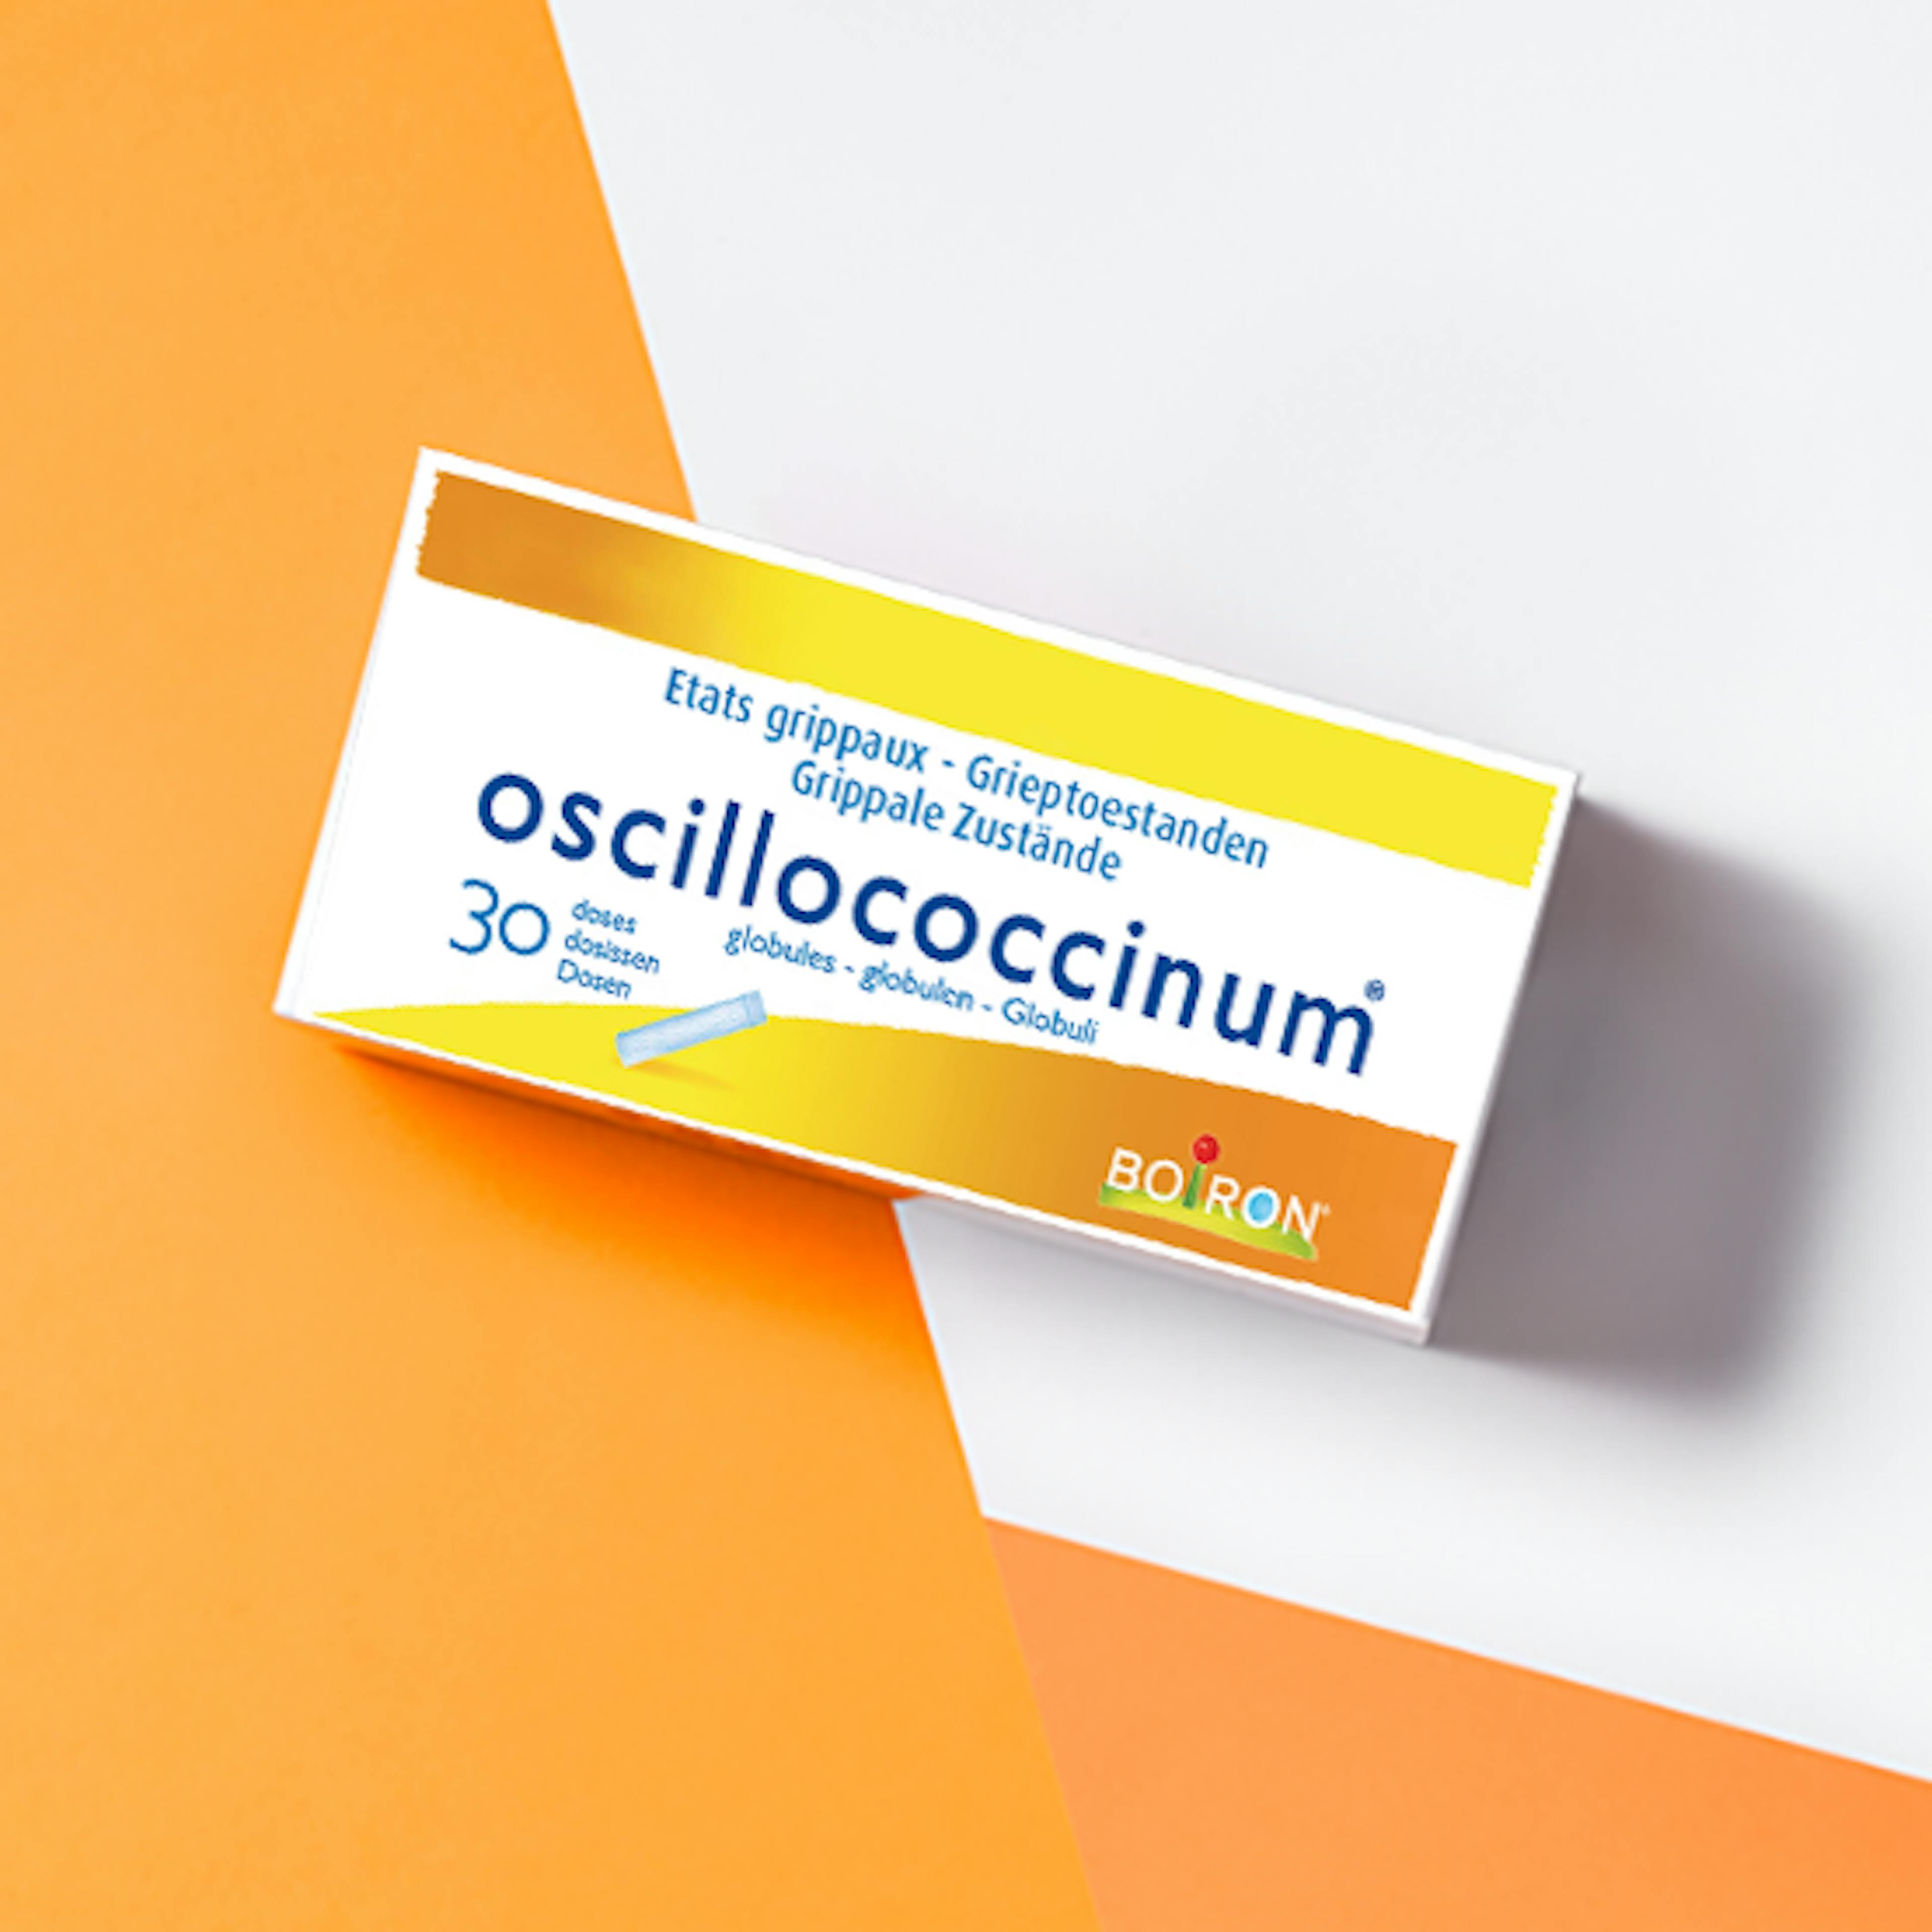 Oscillococcinum | Etat grippal | Boiron : N°1 de l'Homéopathie